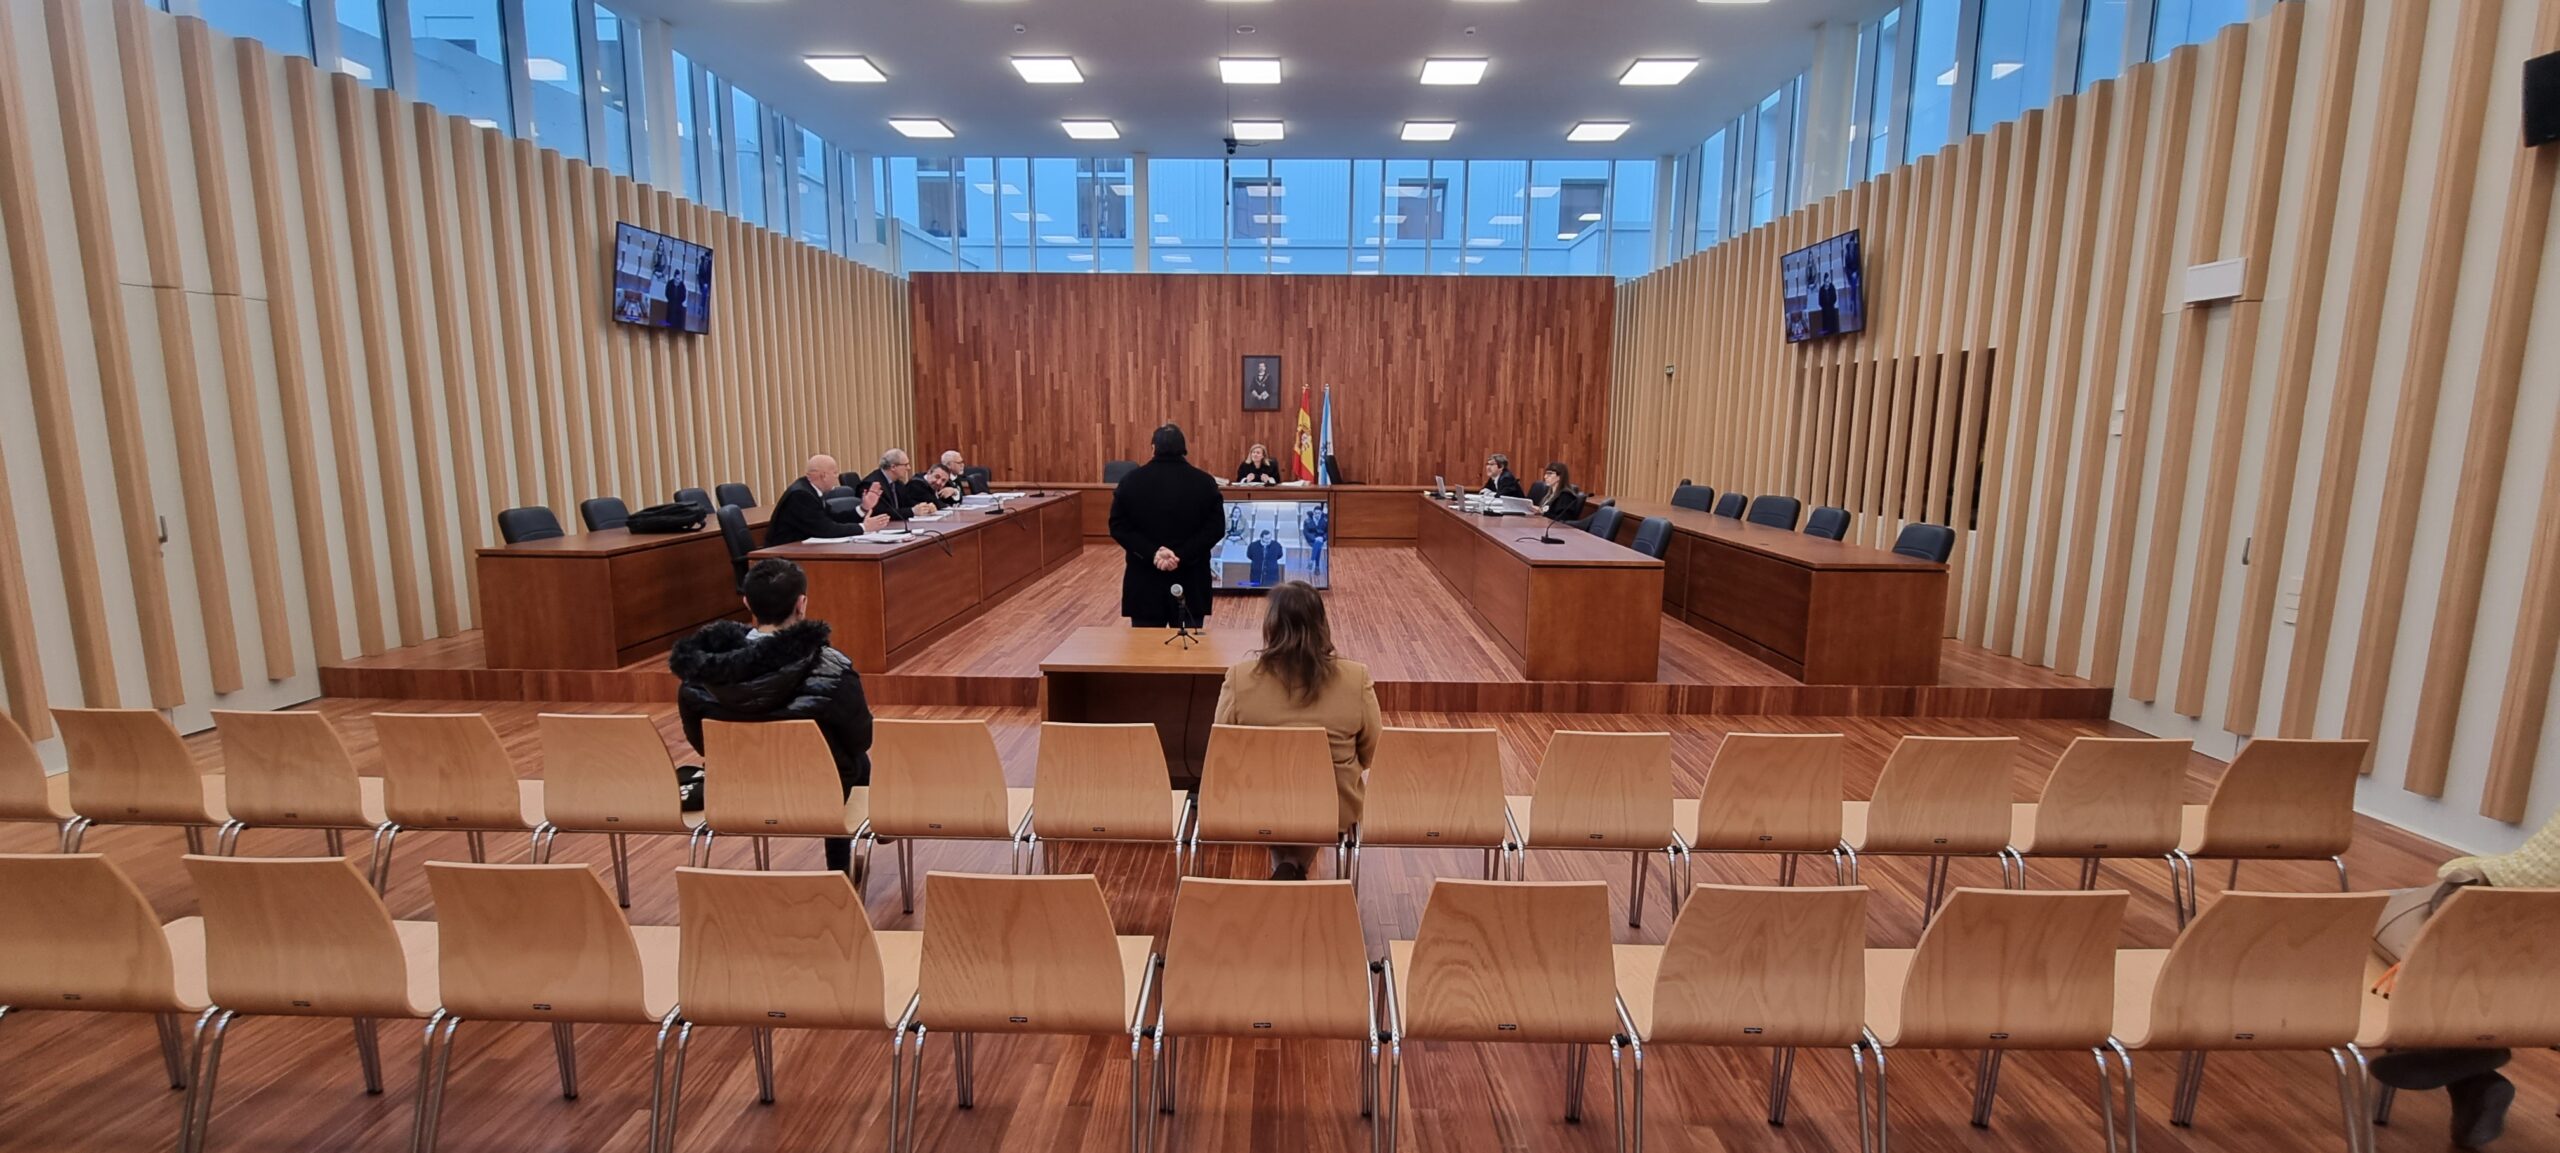 El ex funcionario de Vigo condenado por el 'caso enchufe' tiene 5 días para entrar en prisión